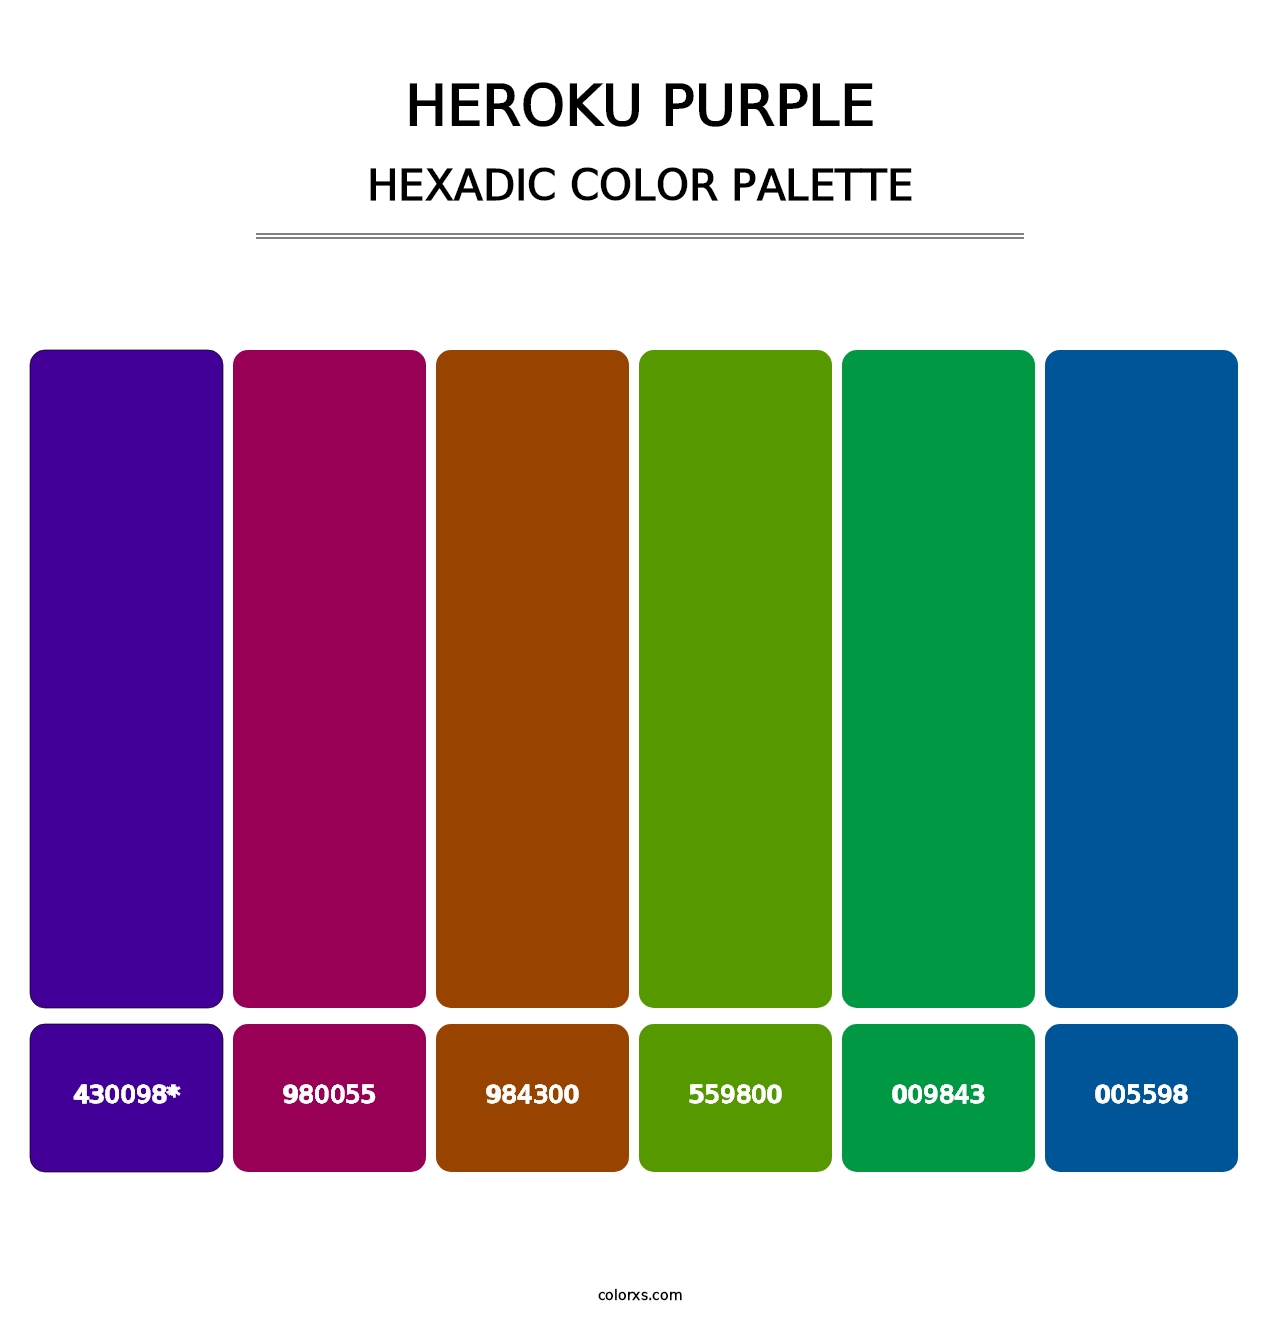 Heroku Purple - Hexadic Color Palette